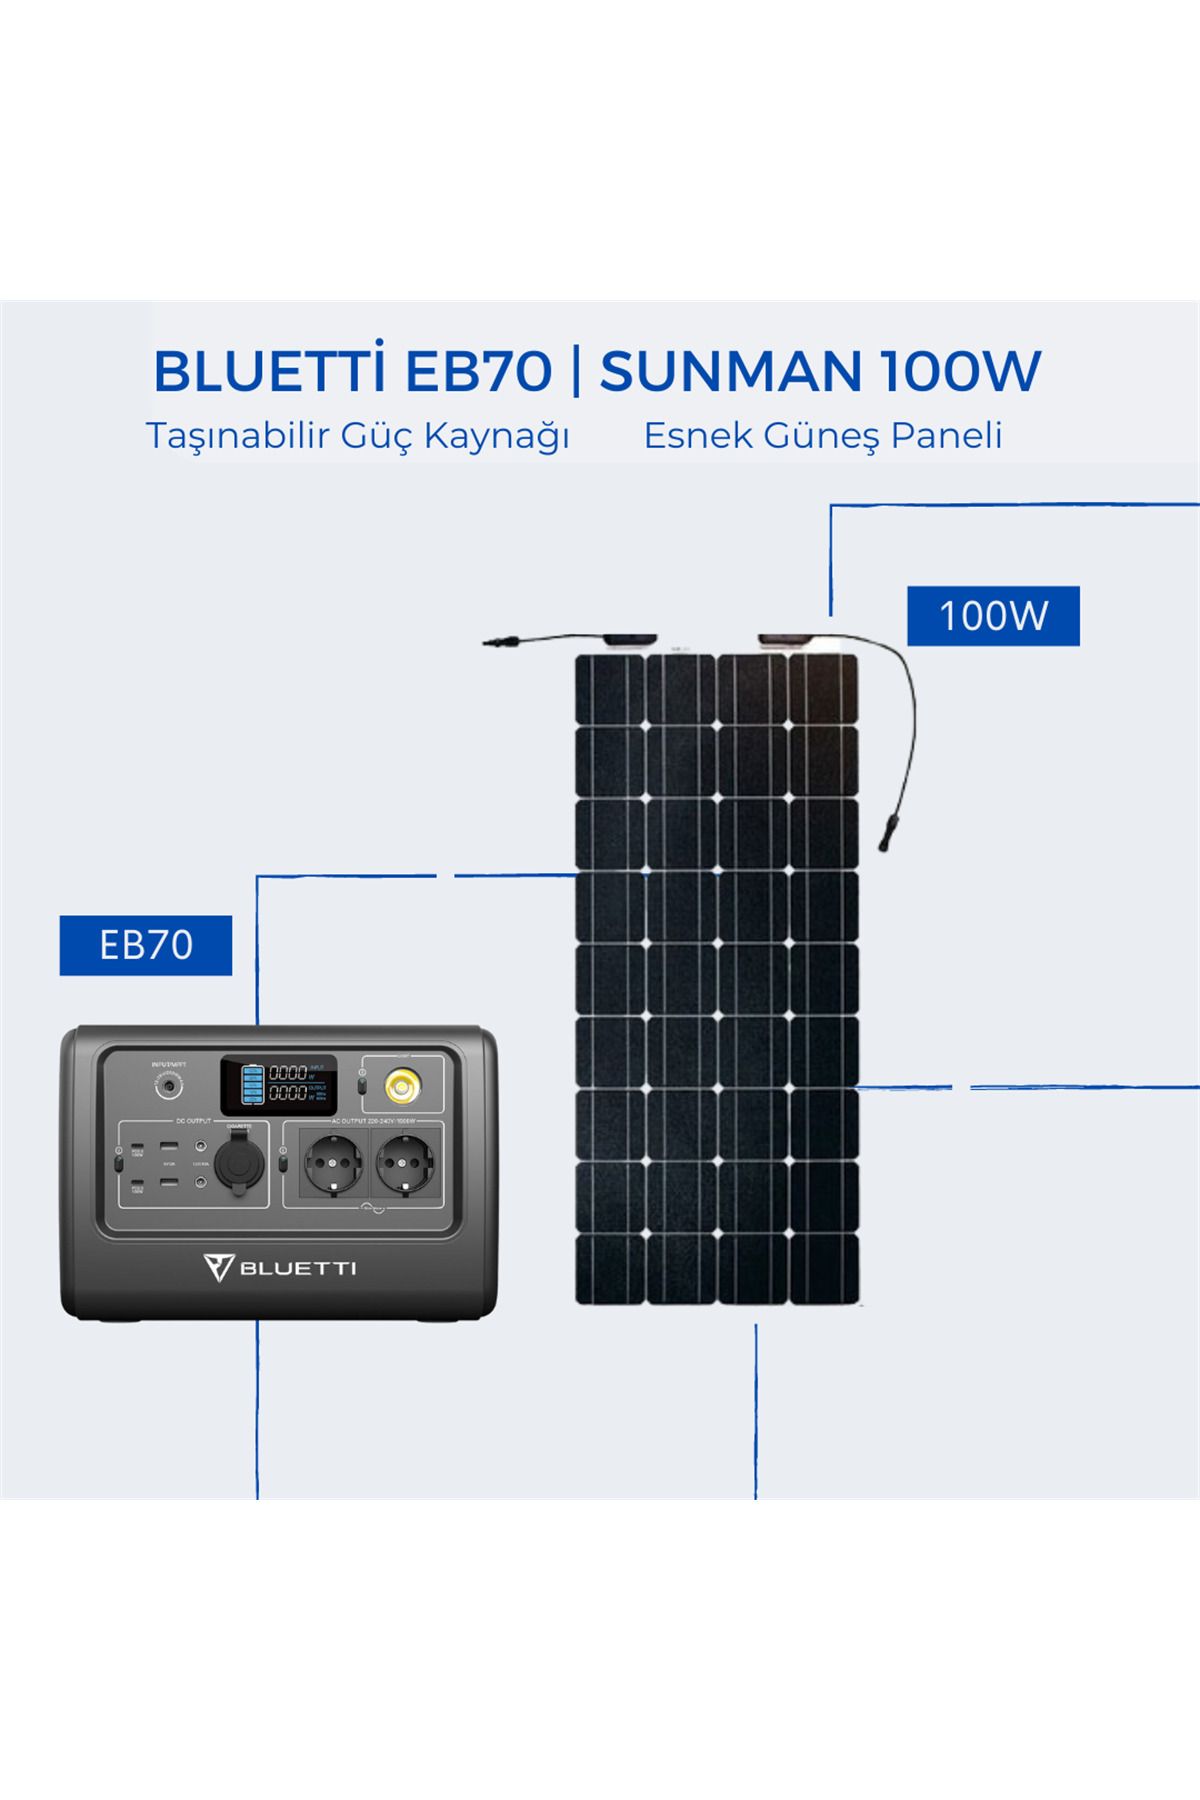 Bluetti Eb70 Taşınabilir Güç Kaynağı | Sunman 100w Esnek Güneş Paneli Paketi